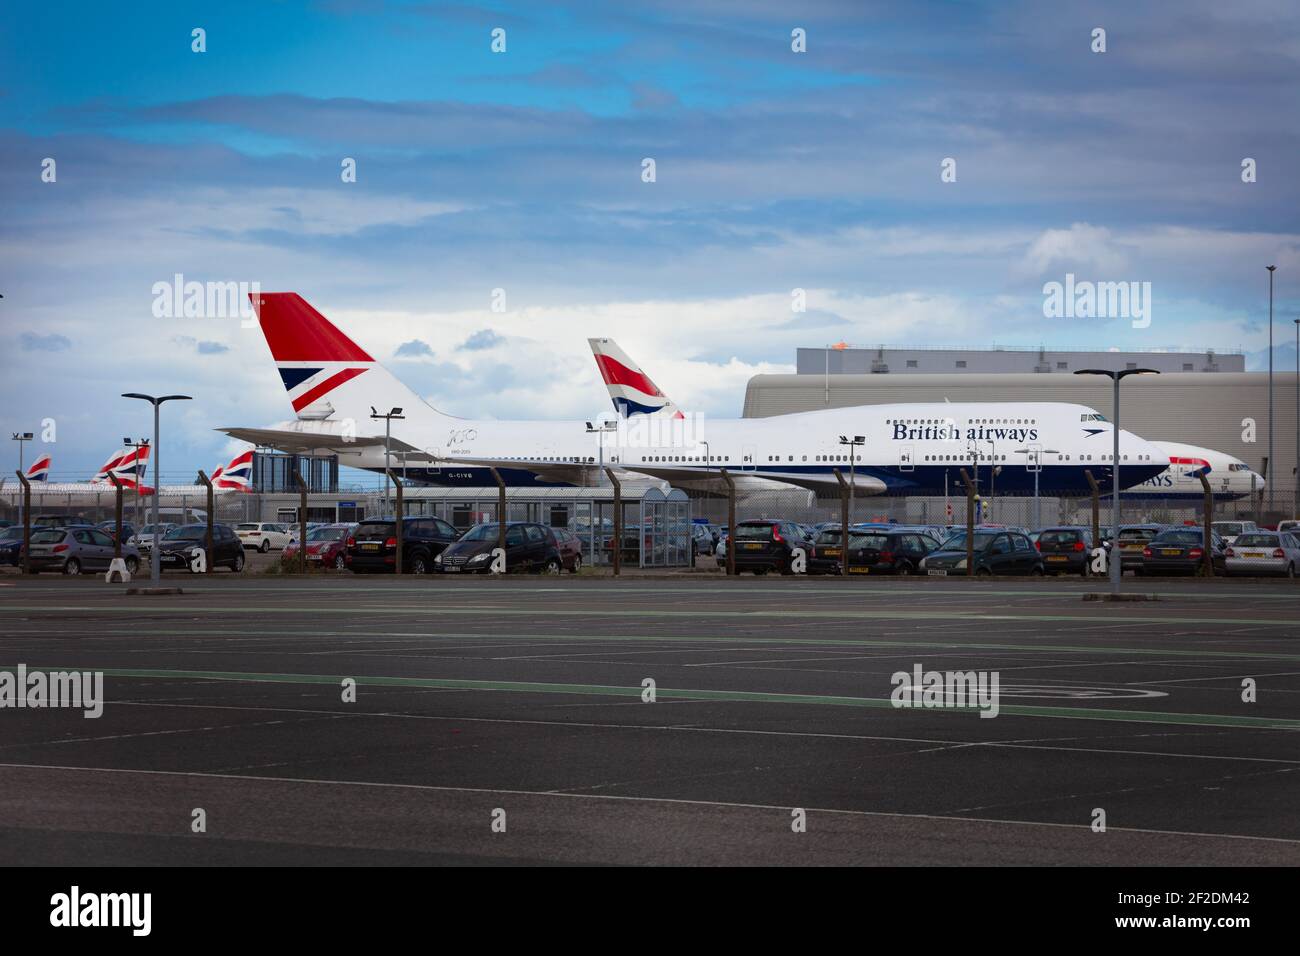 London, Heathrow Airport - June, 2020: British Airways, Boeing 747, retro Livery, Negus, parked during Coronavirus Lockdown. image Abdul Quraishi Stock Photo